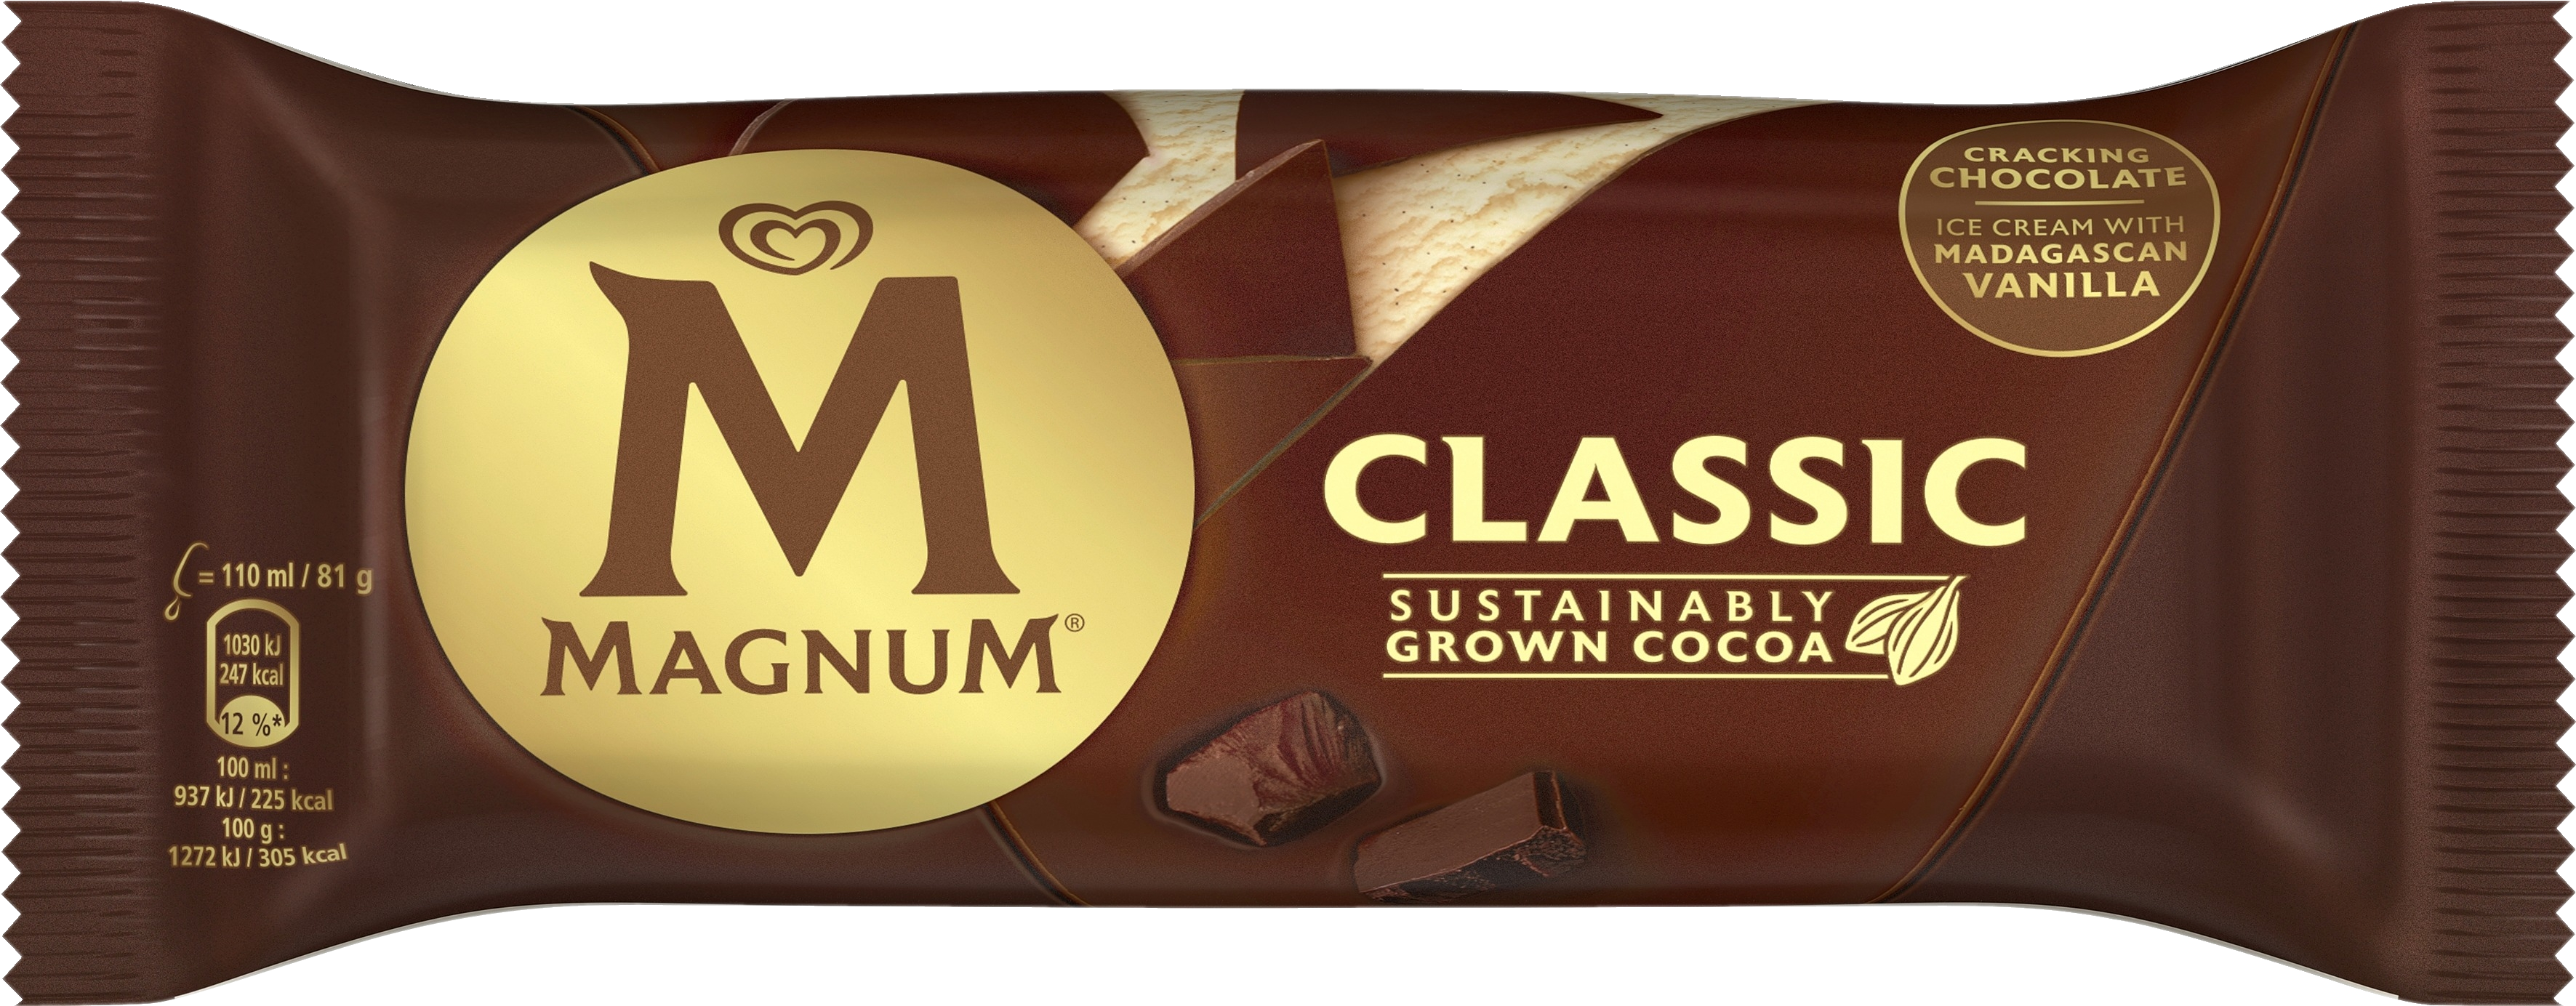 Magnum Classic Jäätelö 110ml/81g